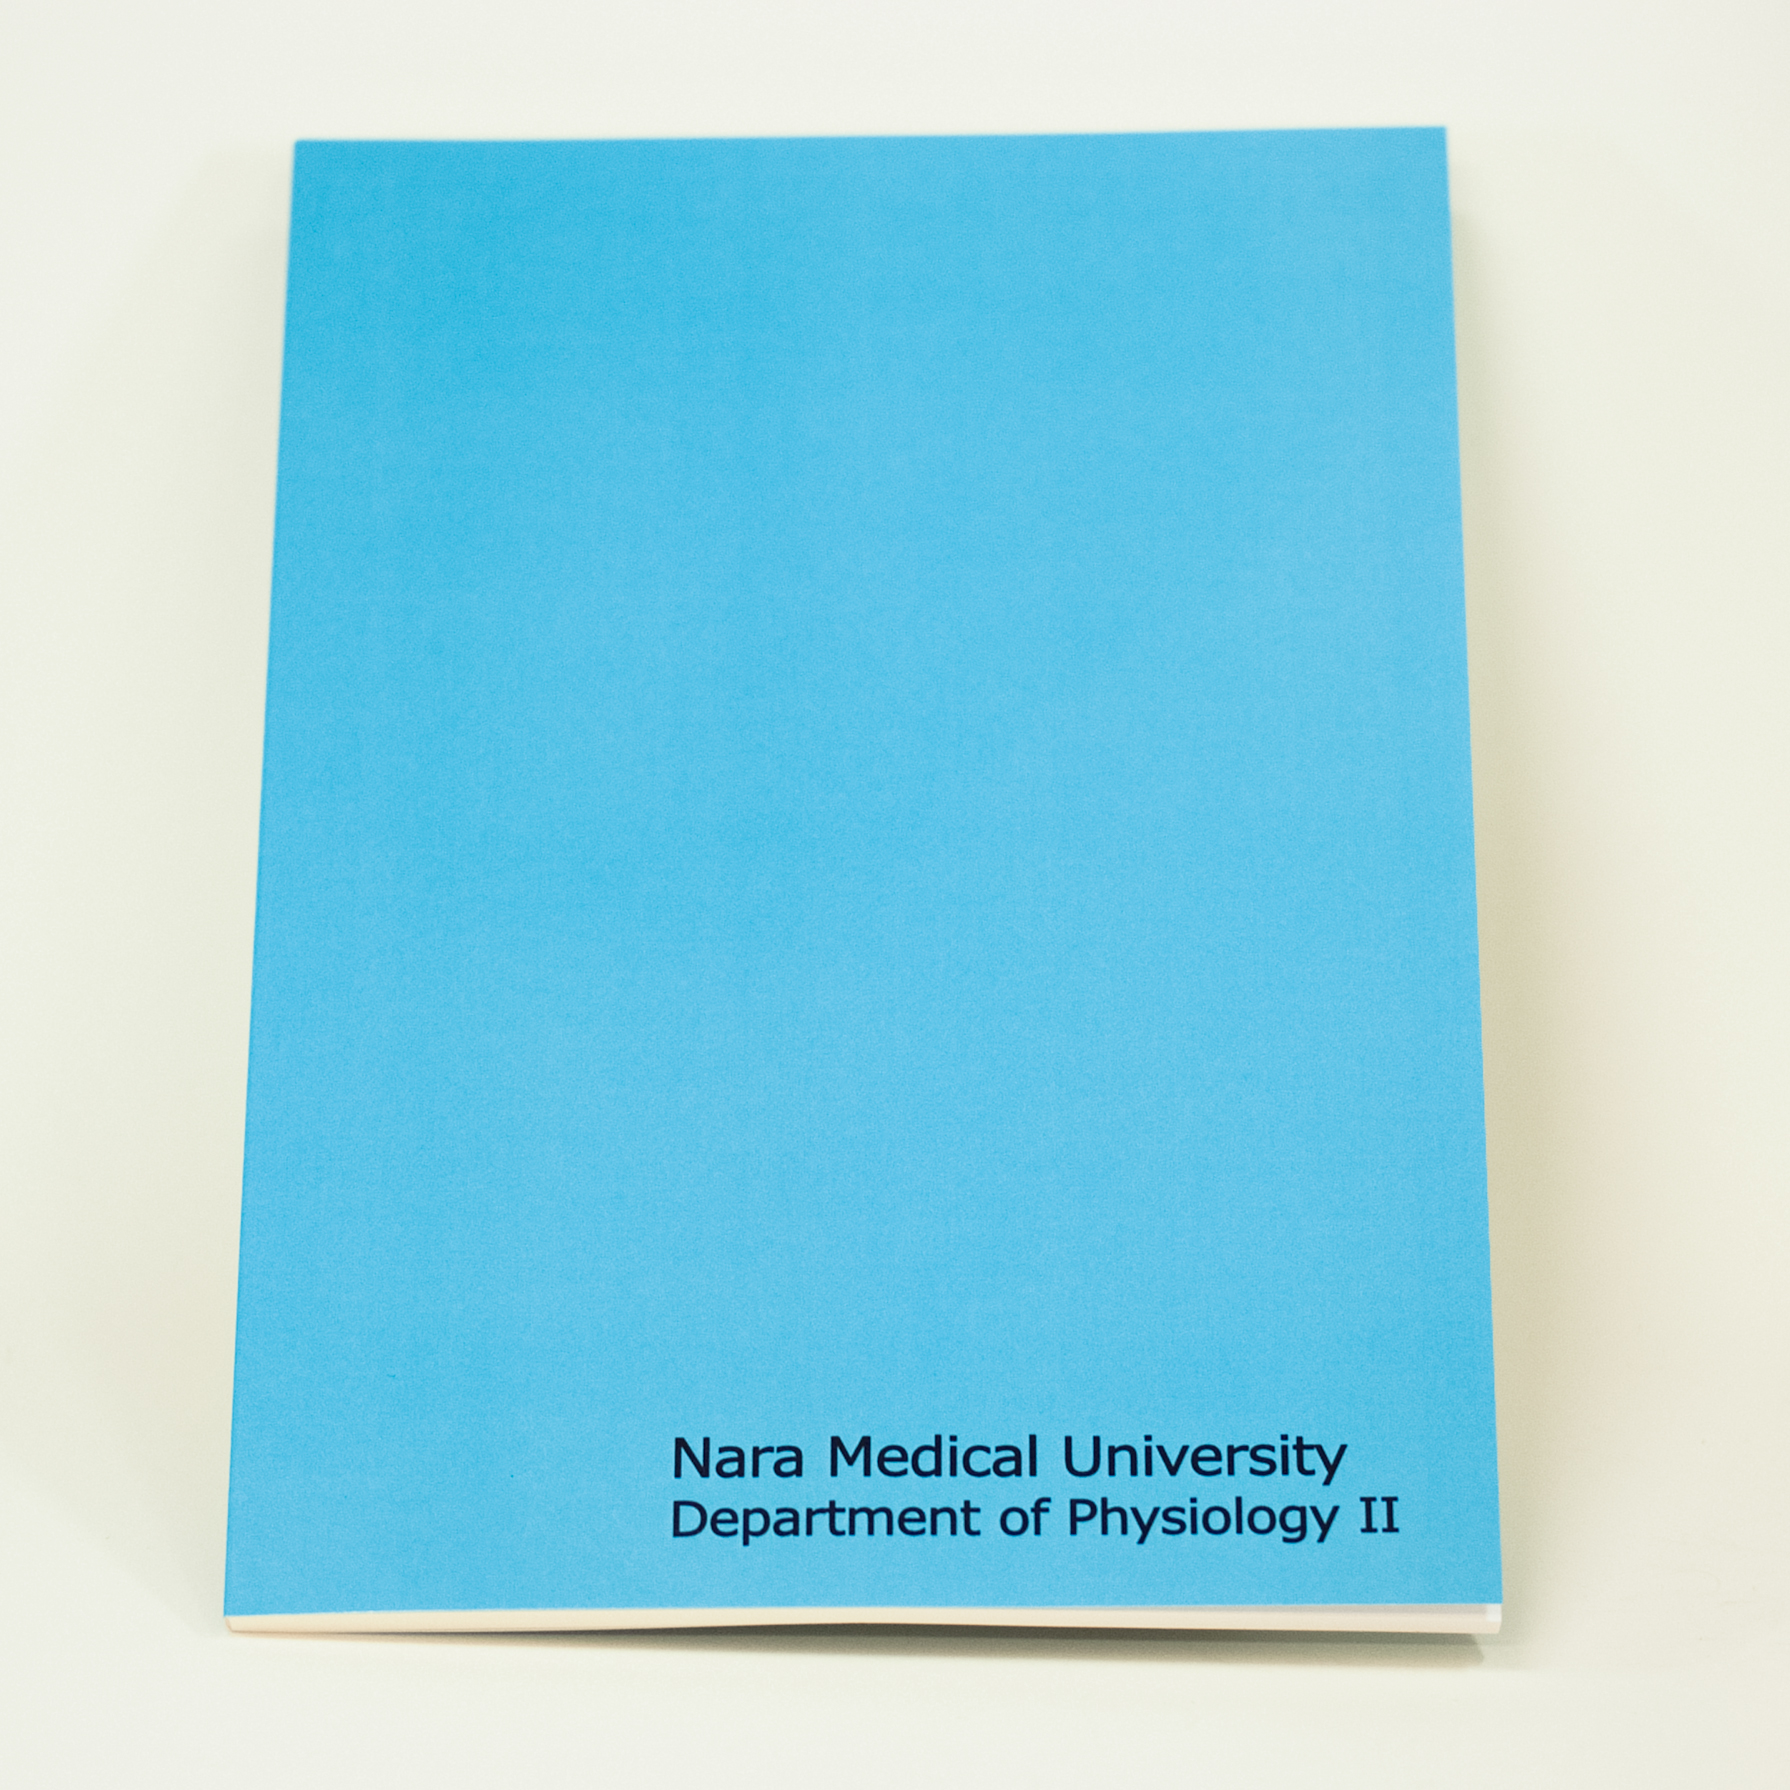 「奈良県立医科大学 様」製作のオリジナルノート